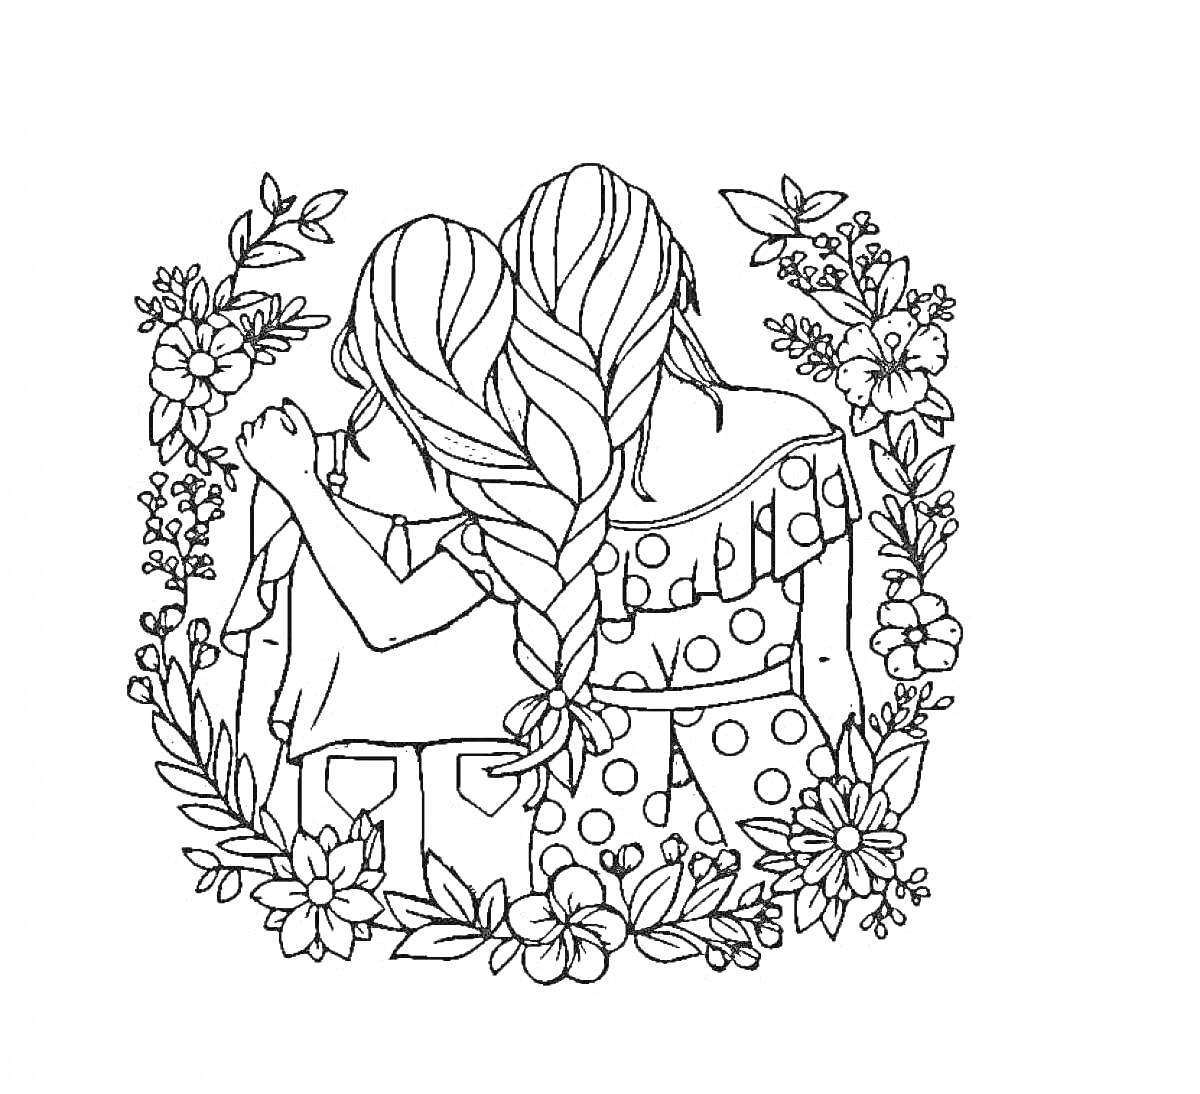 Раскраска Две девочки, обнимающиеся спиной к зрителю, с длинной косой, обрамленные цветами и листвой.